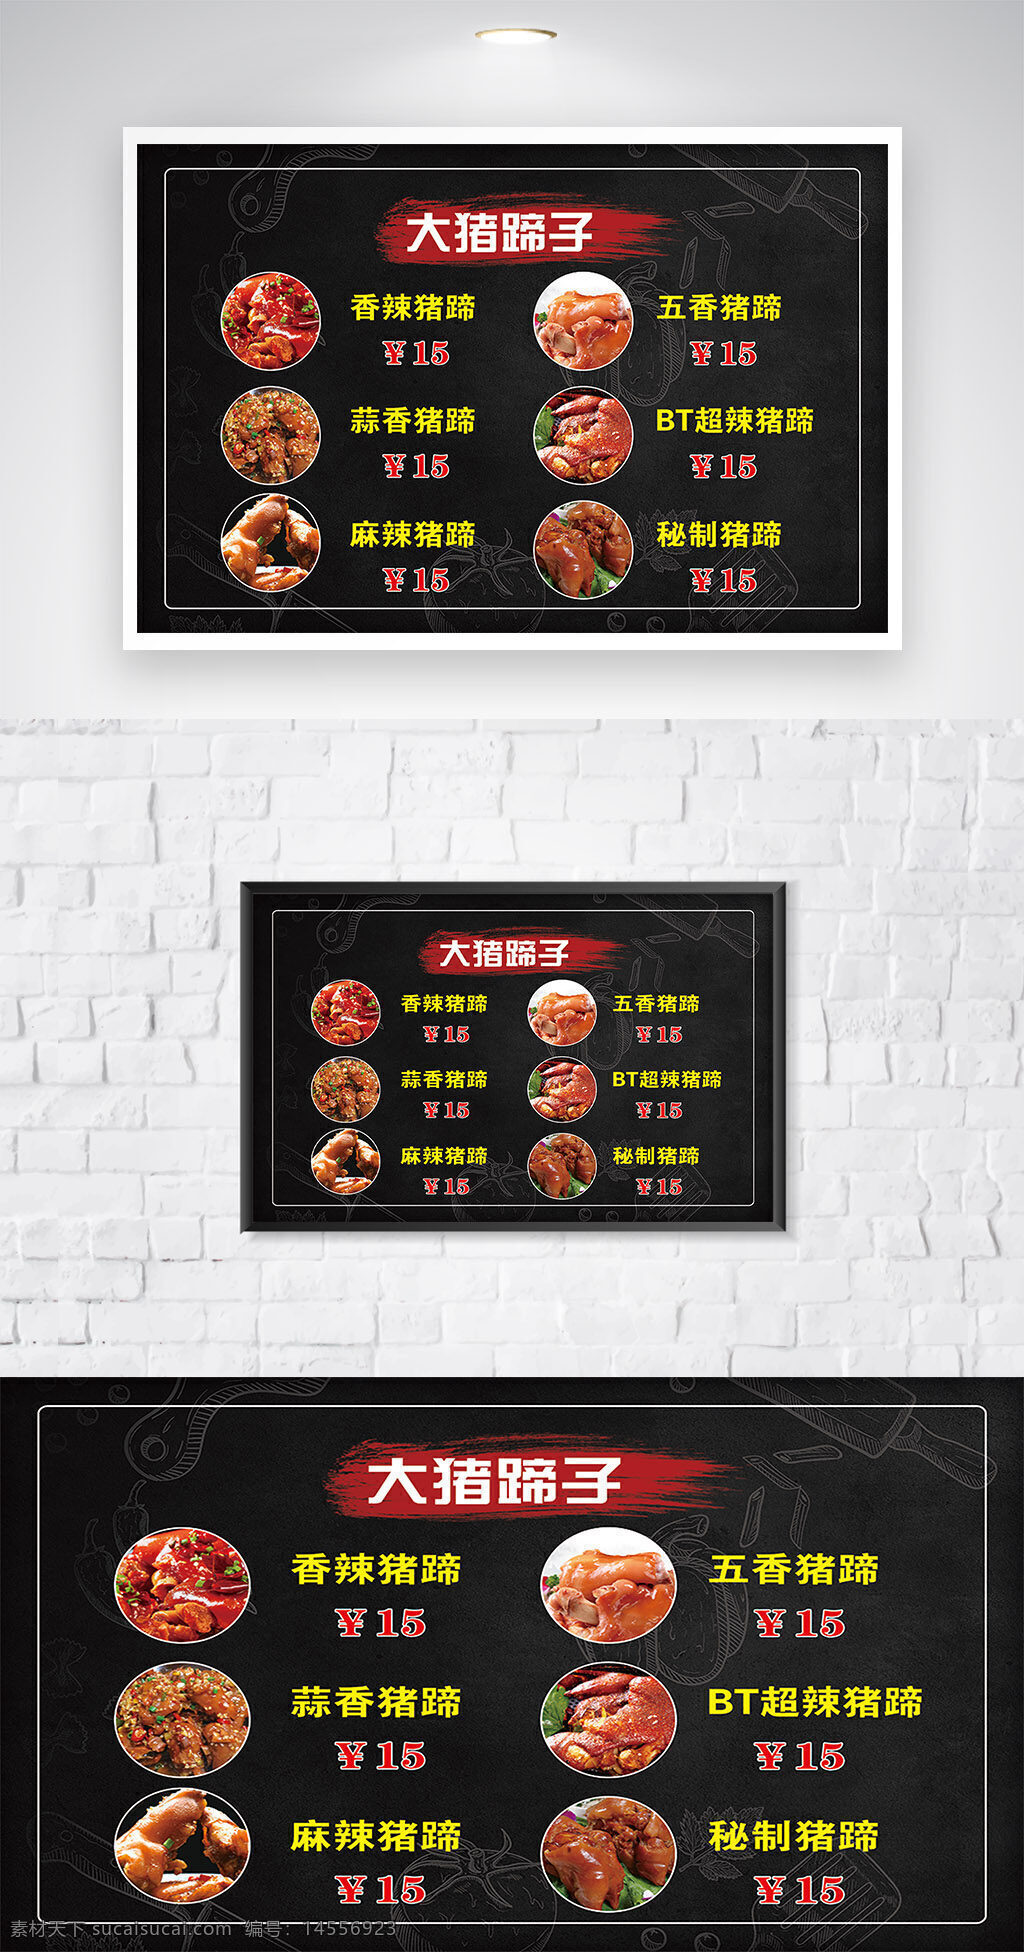 菜单图片 菜单模板下载 菜单矢量素材 广告设计 汤 小炒 猪蹄 菜单 铁板类 红烧类